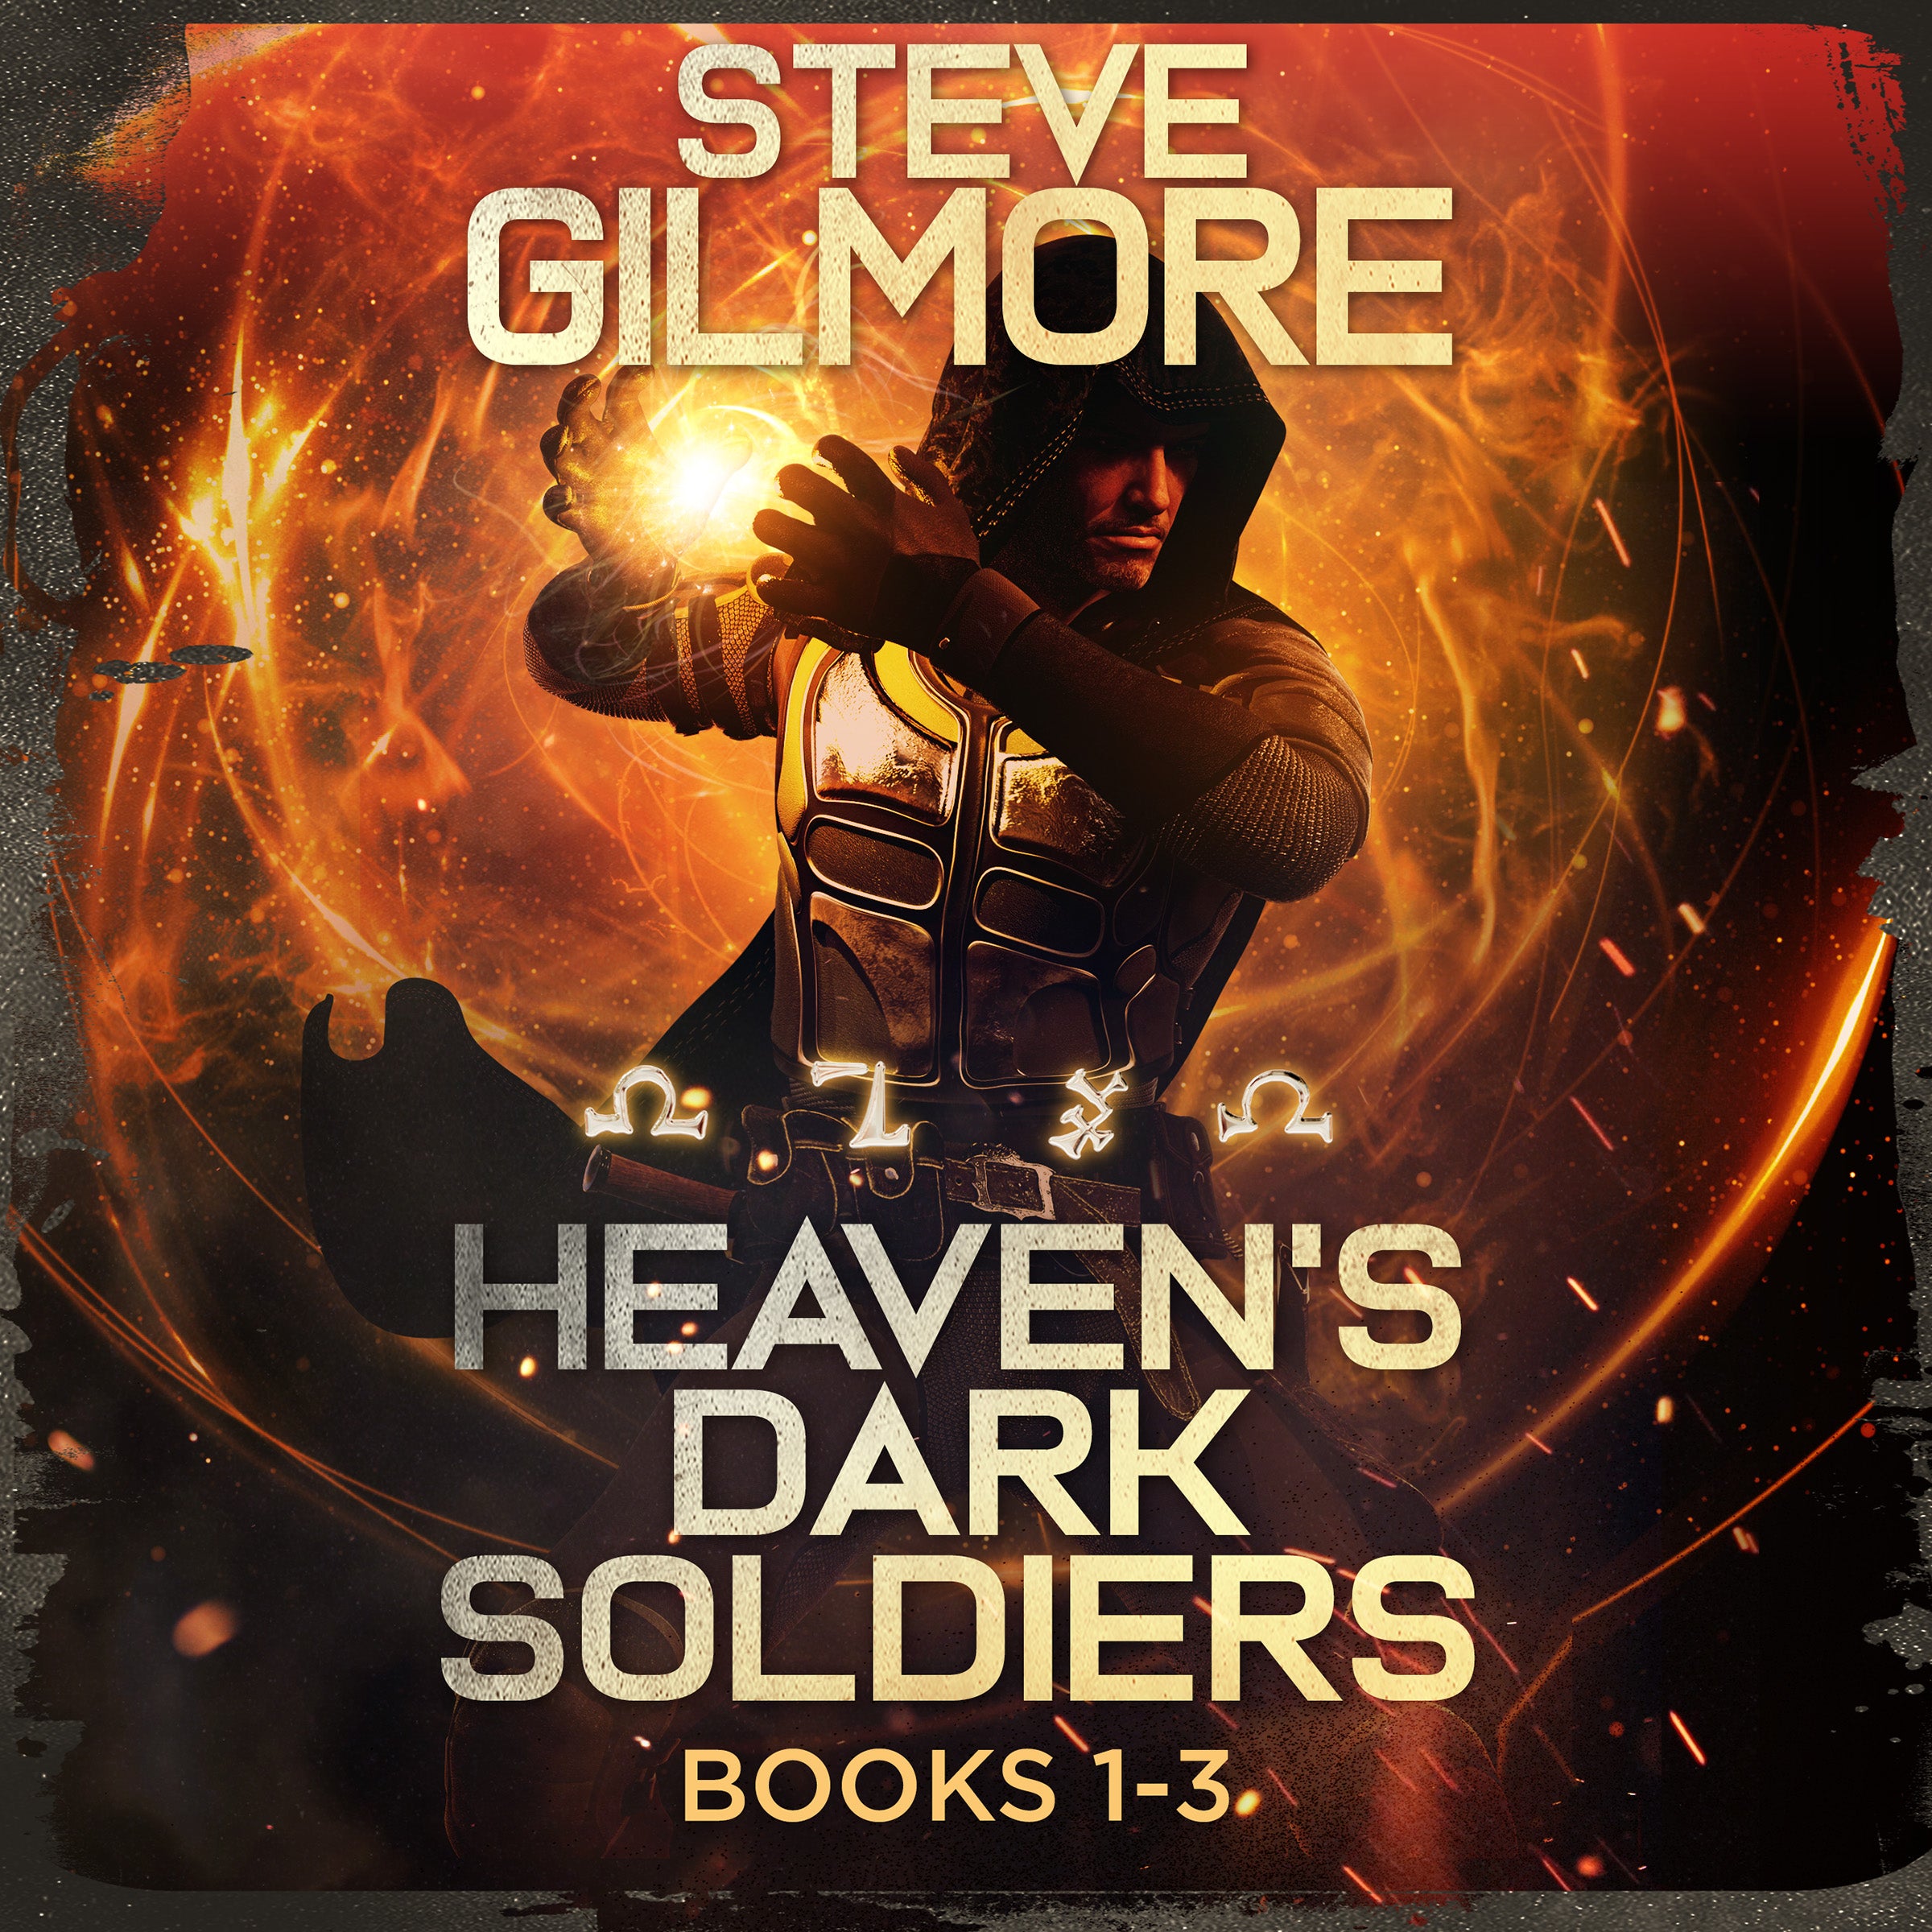 Heaven's Dark Soldiers Audiobook Bundle 1-3